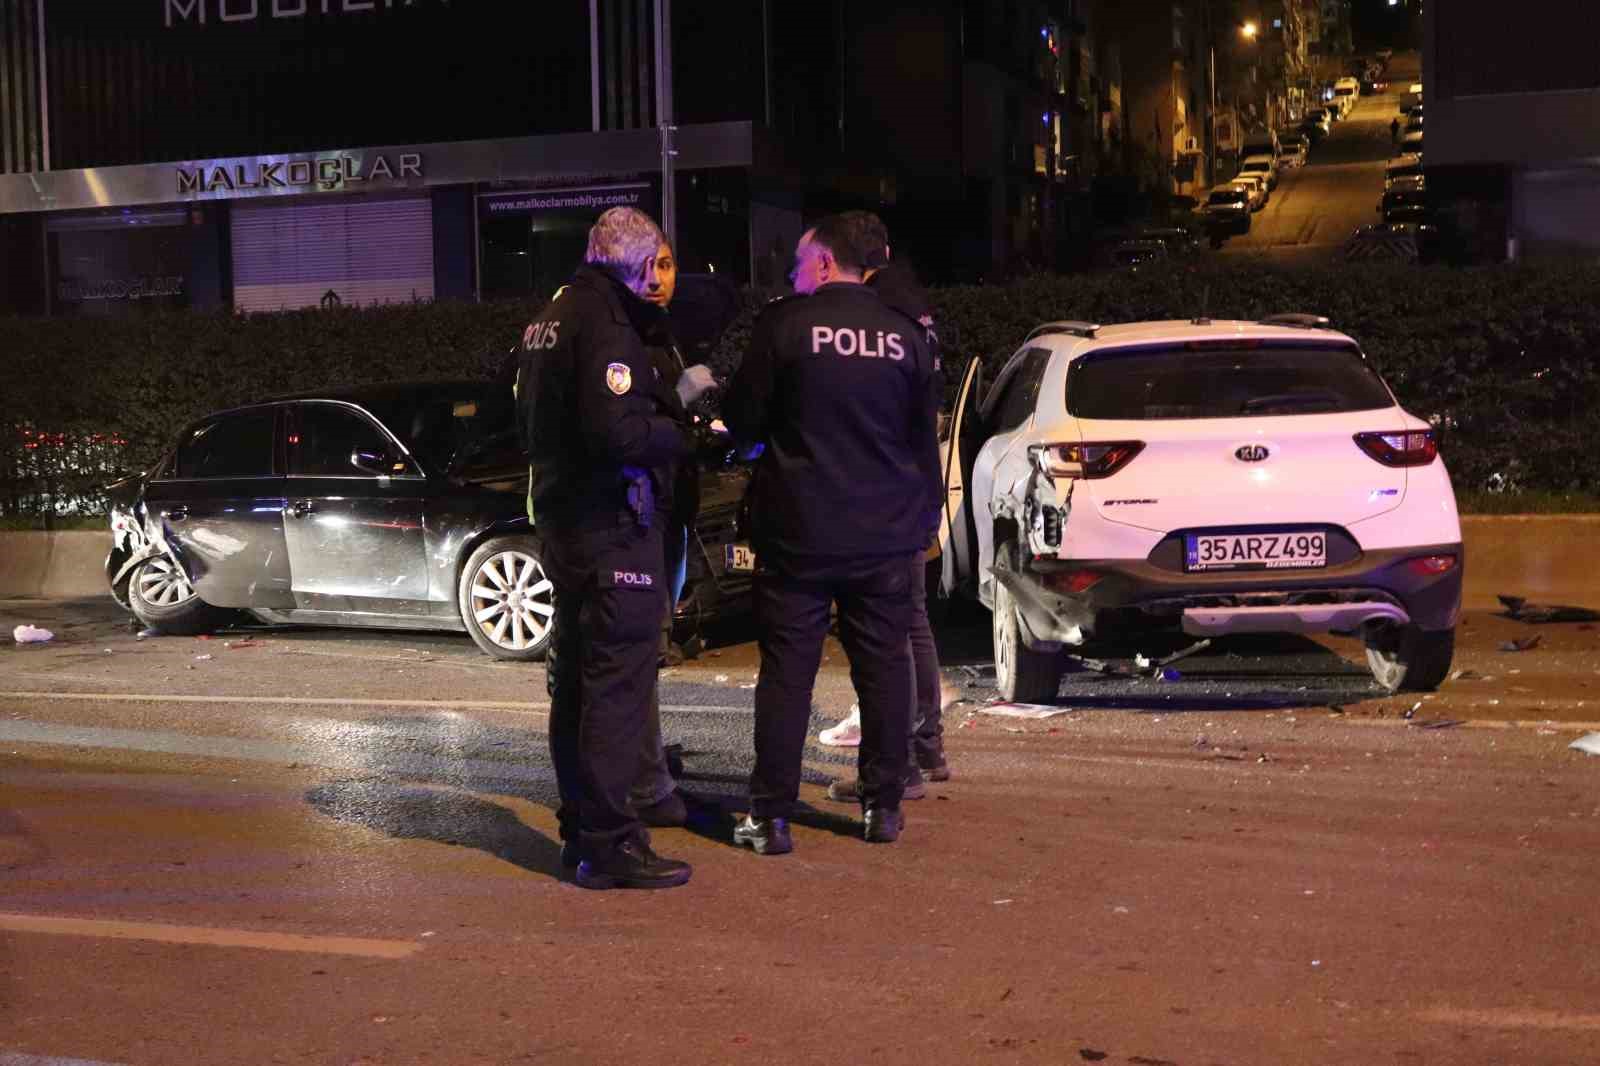 İzmir’deki feci kazada ortalık savaş alanına döndü: 2 ölü, 7 yaralı
